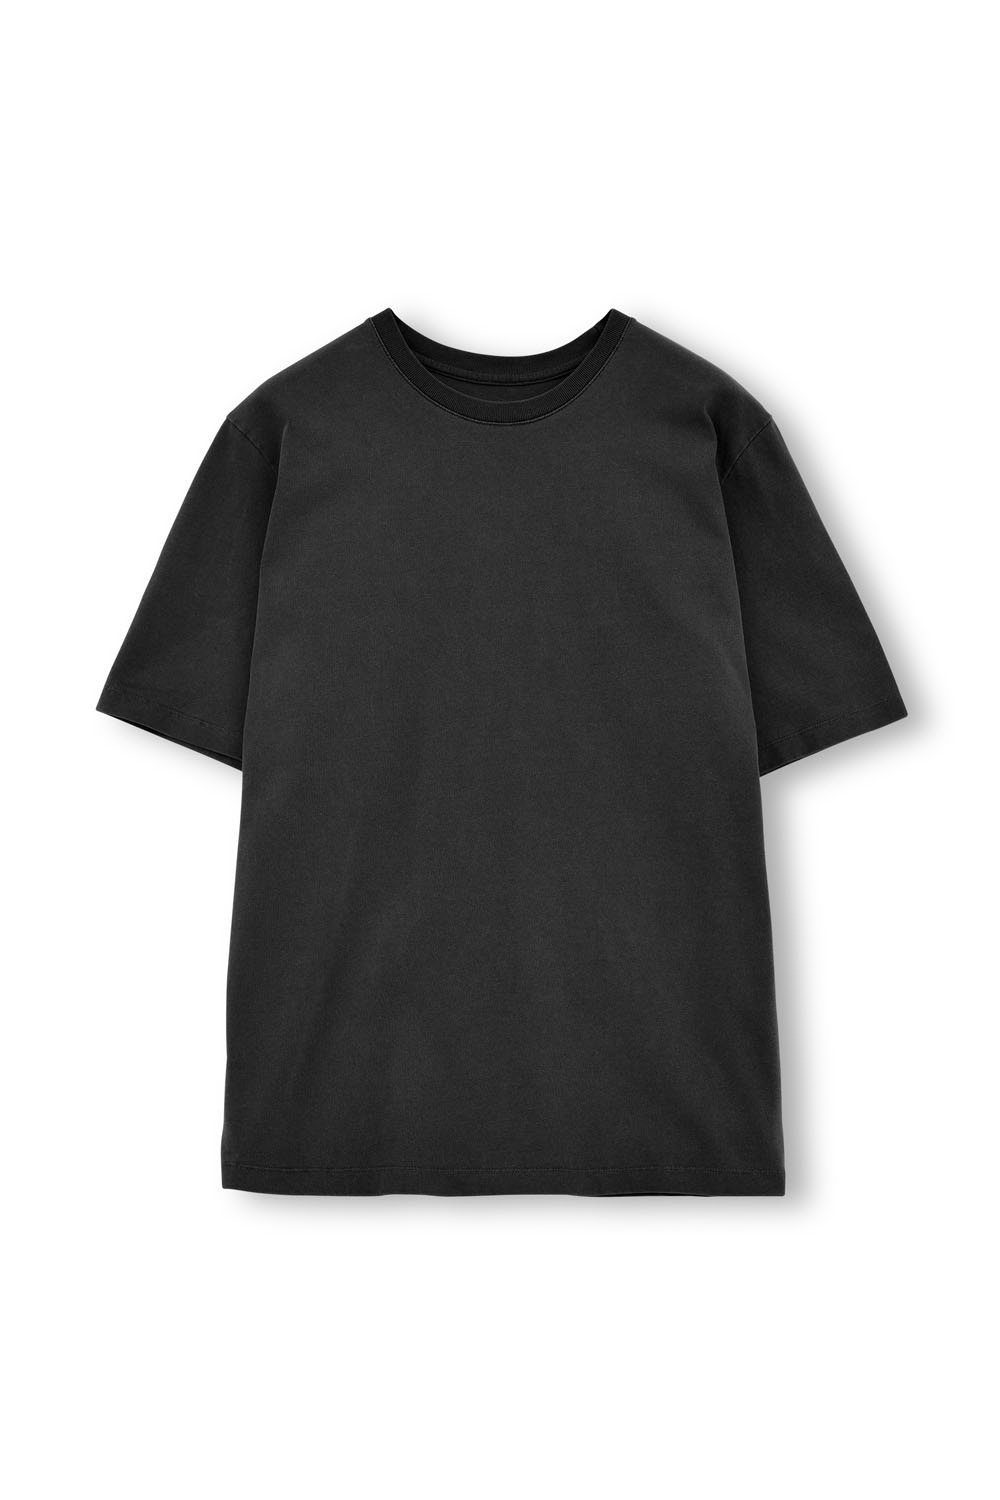 Washed T-Shirt-Washed Black